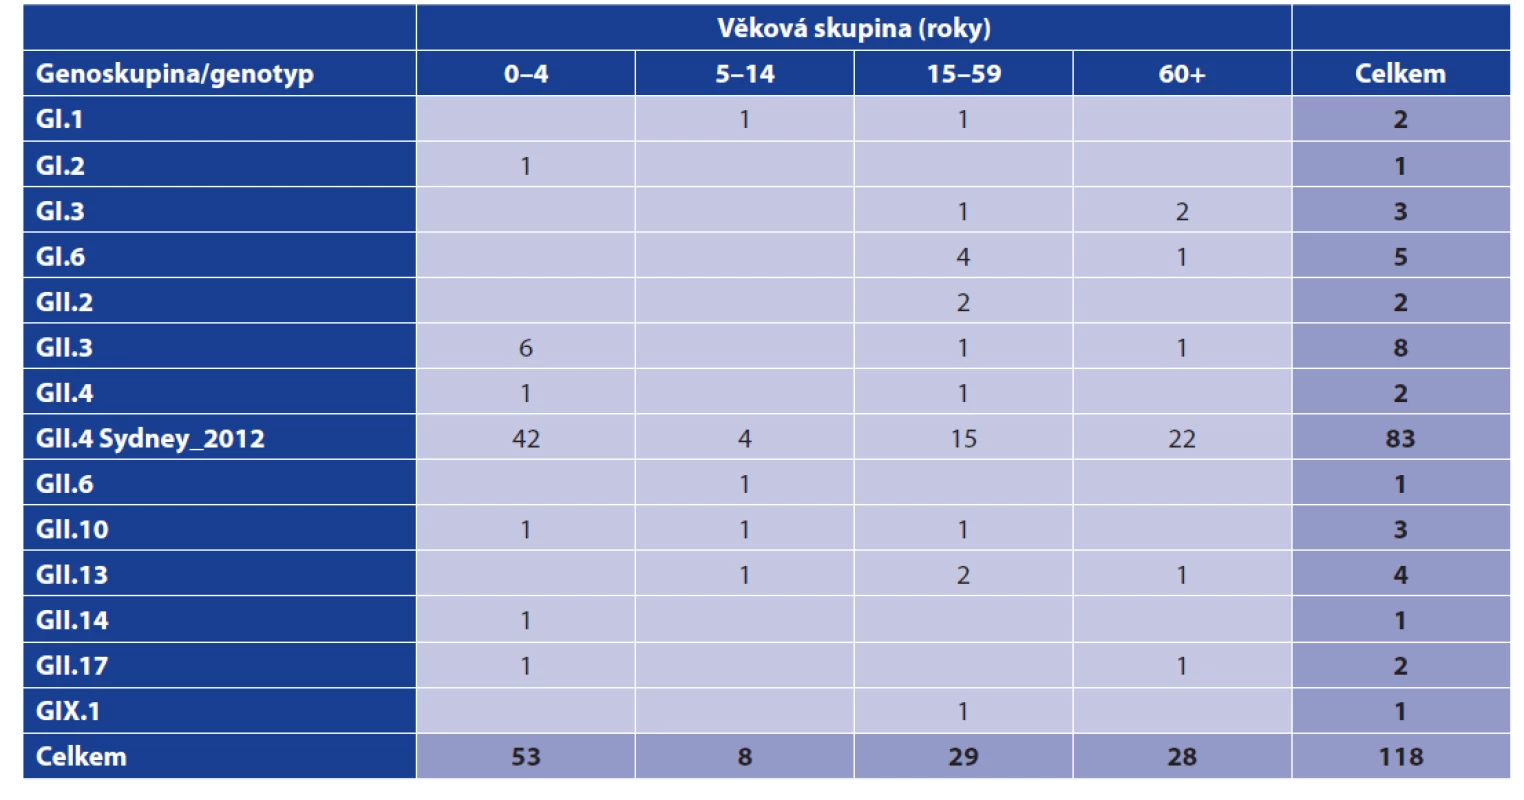 Výskyt genoskupin/genotypů norovirů v jednotlivých věkových skupinách (FN Plzeň, červen 2017 až březen 2020)<br>
Table 1. Distribution of norovirus genogroups/genotypes by age group (Pilsen University Hospital, June 2017–March 2020)